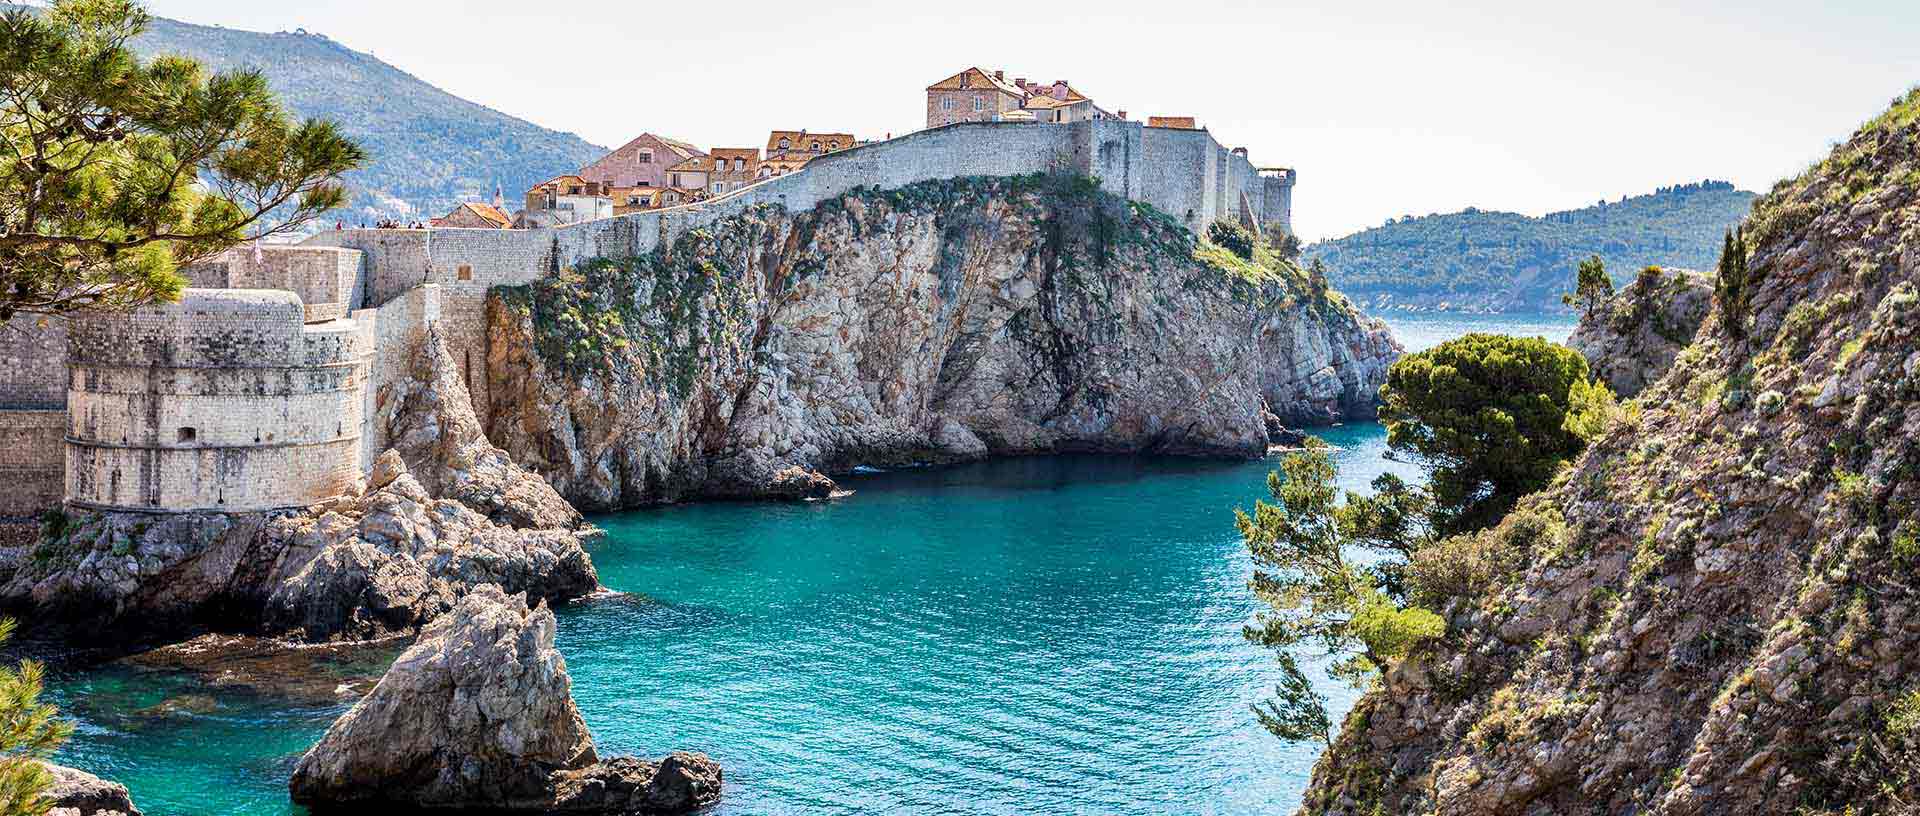 Prodloužená cesta za řeckými poklady a Jadranskou riviérou